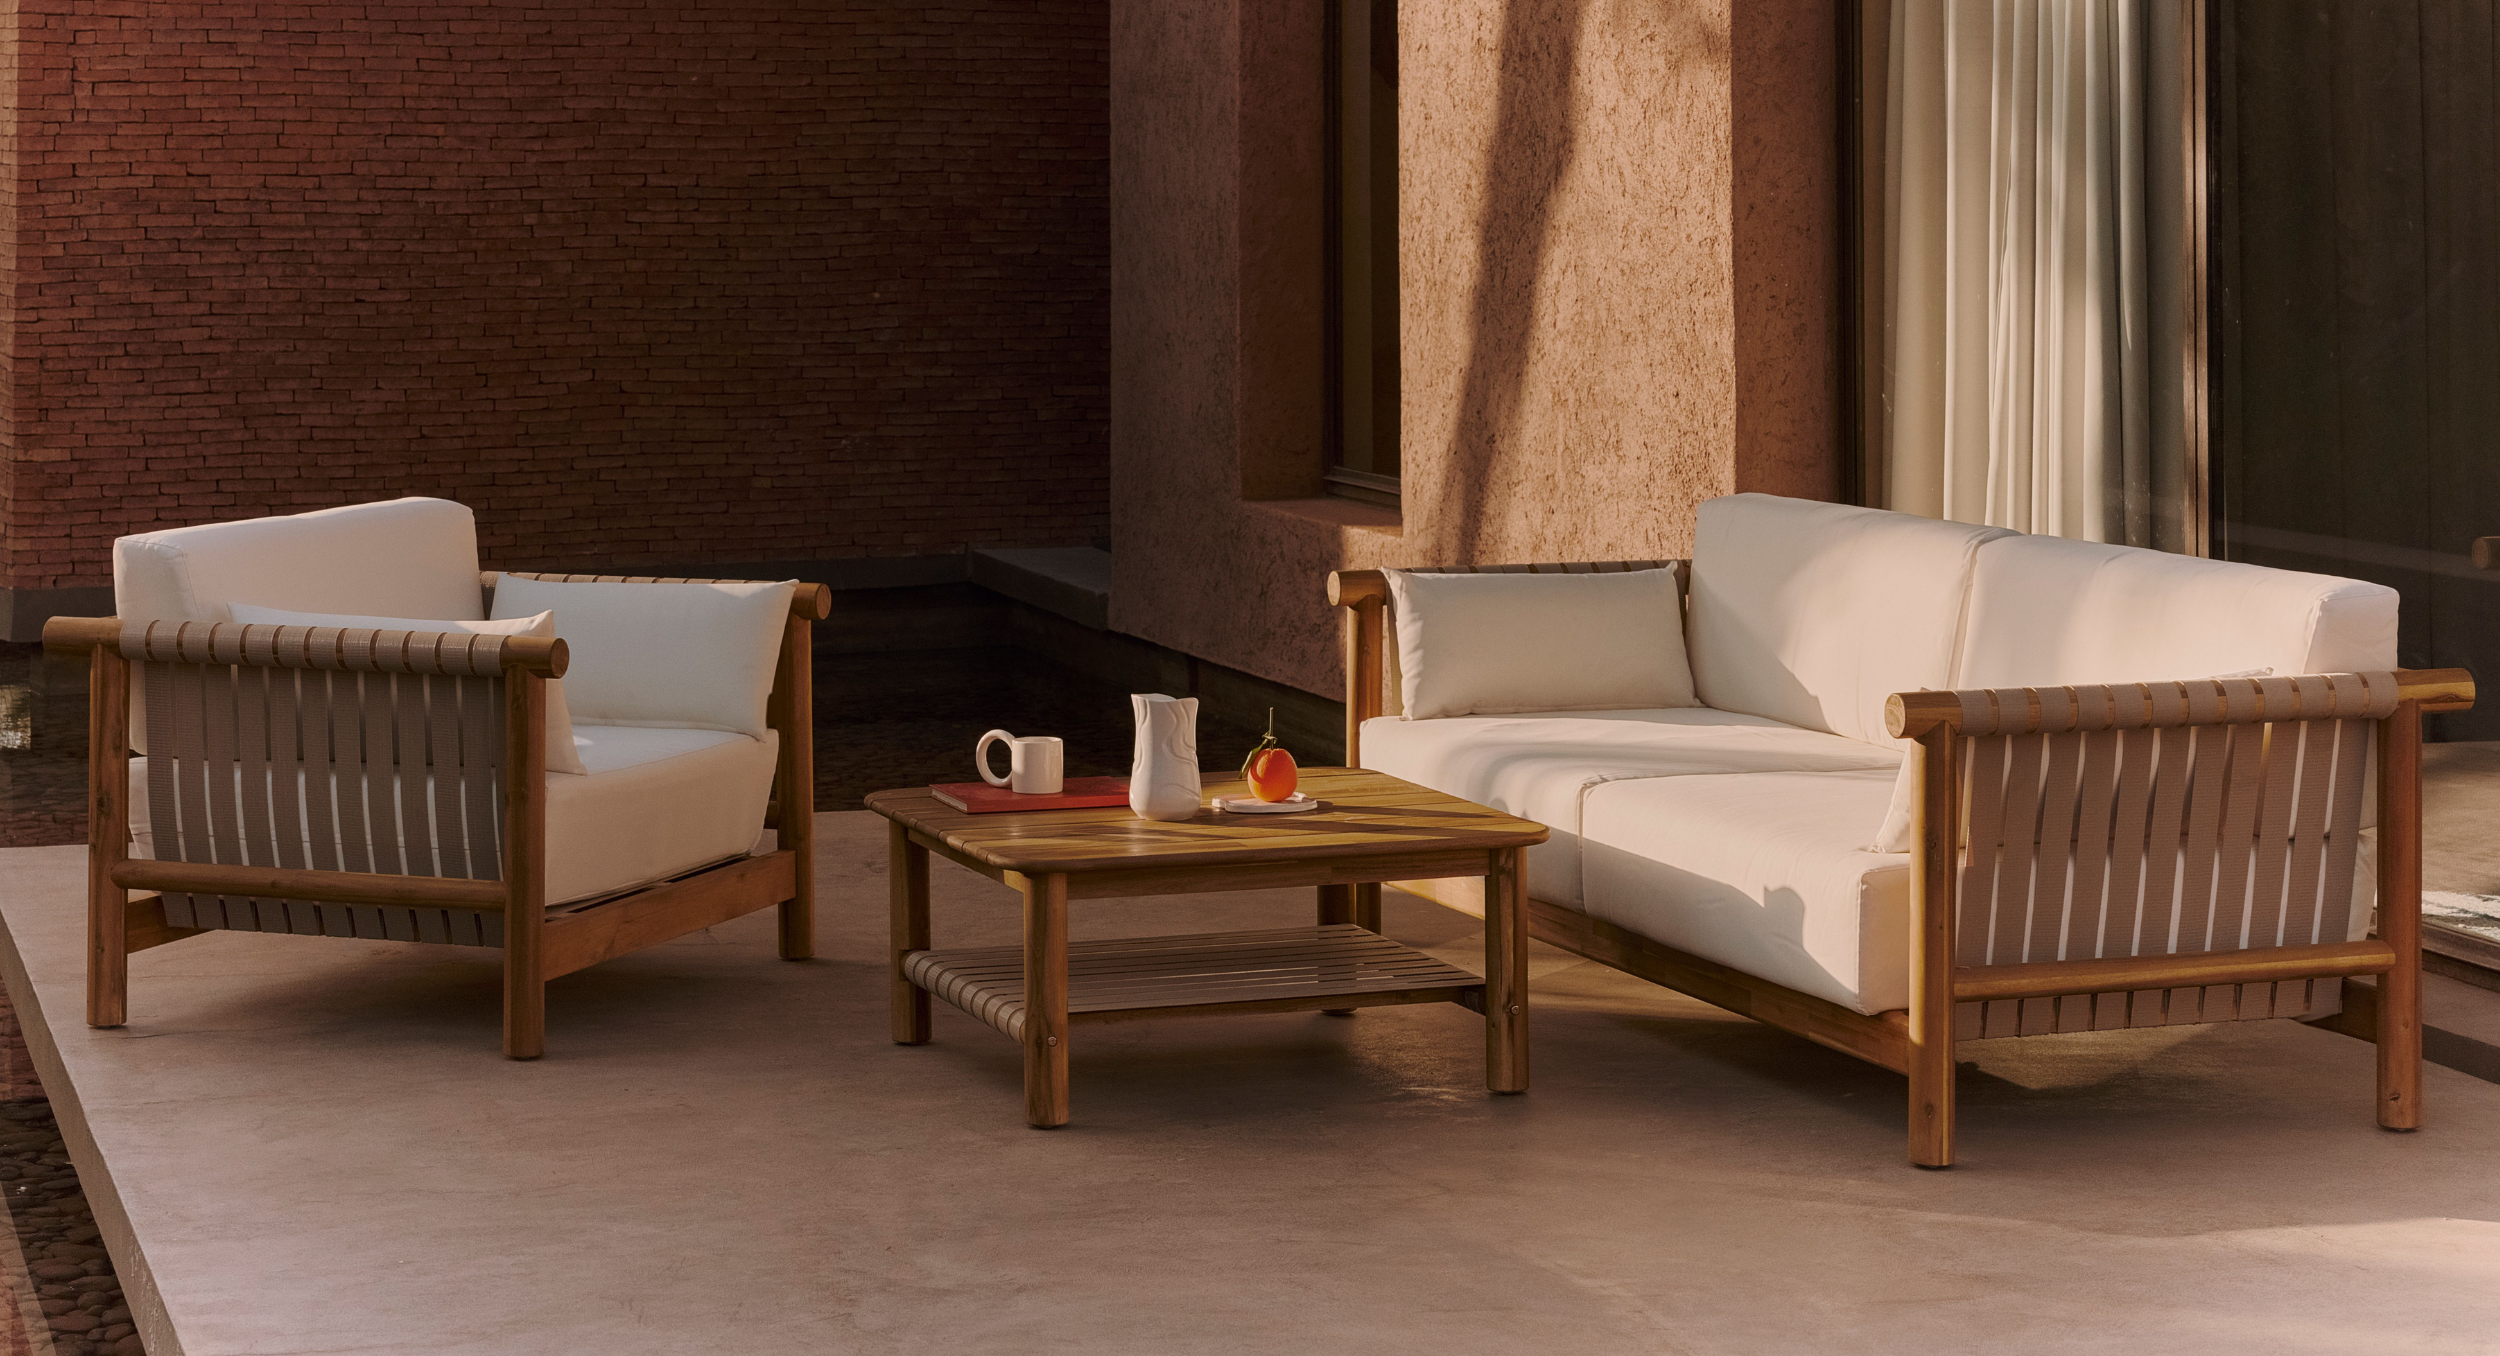 Nos conseils Pourquoi choisir des meubles en bois d'acacia pour votre prochain aménagement extérieur ? Nos conseils